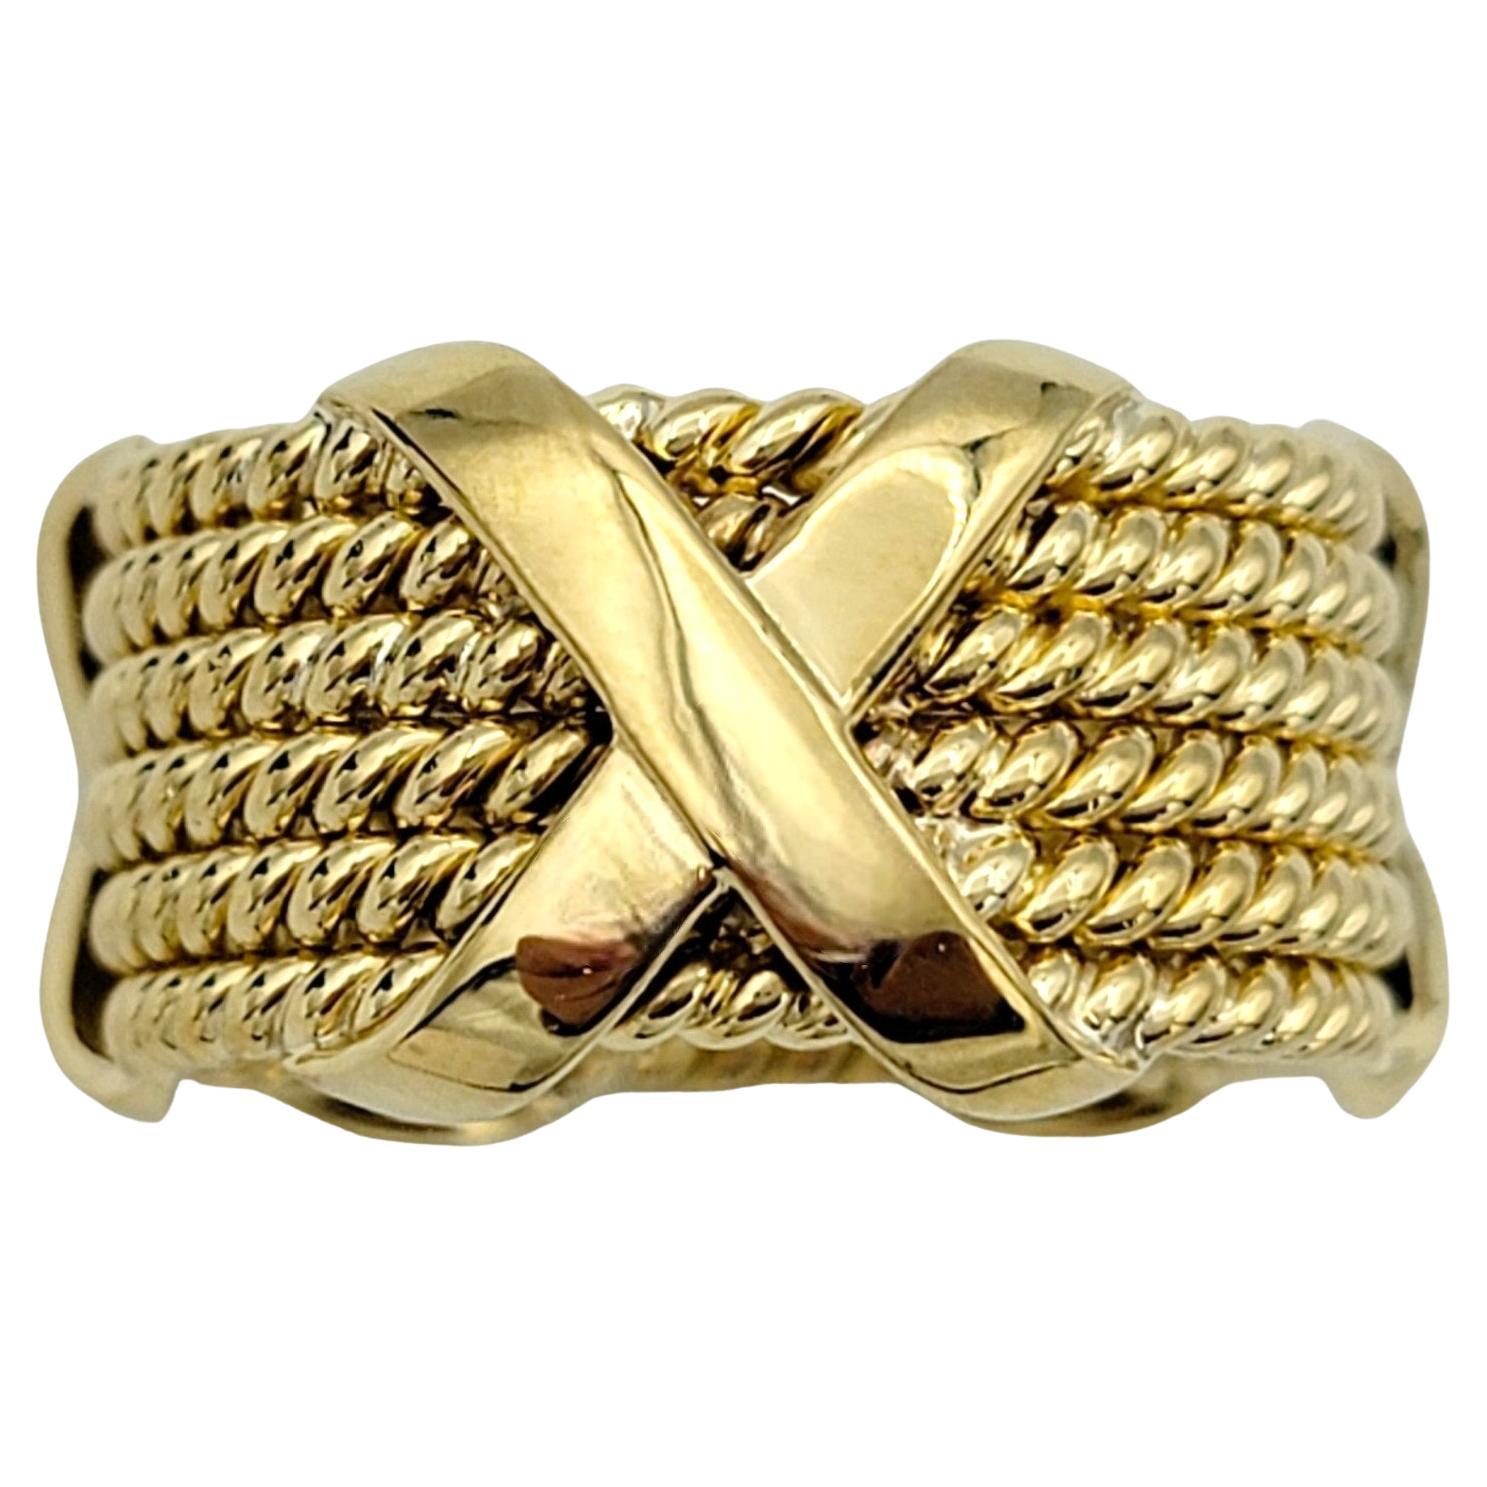 Taille de l'anneau : 8.5

Fabriqué avec une attention méticuleuse aux détails, le bracelet Tiffany & Co. La bague Schlumberger à 6 rangs de corde en forme de X exsude la sophistication et le charme intemporel. Façonnée en or jaune 18 carats, cette